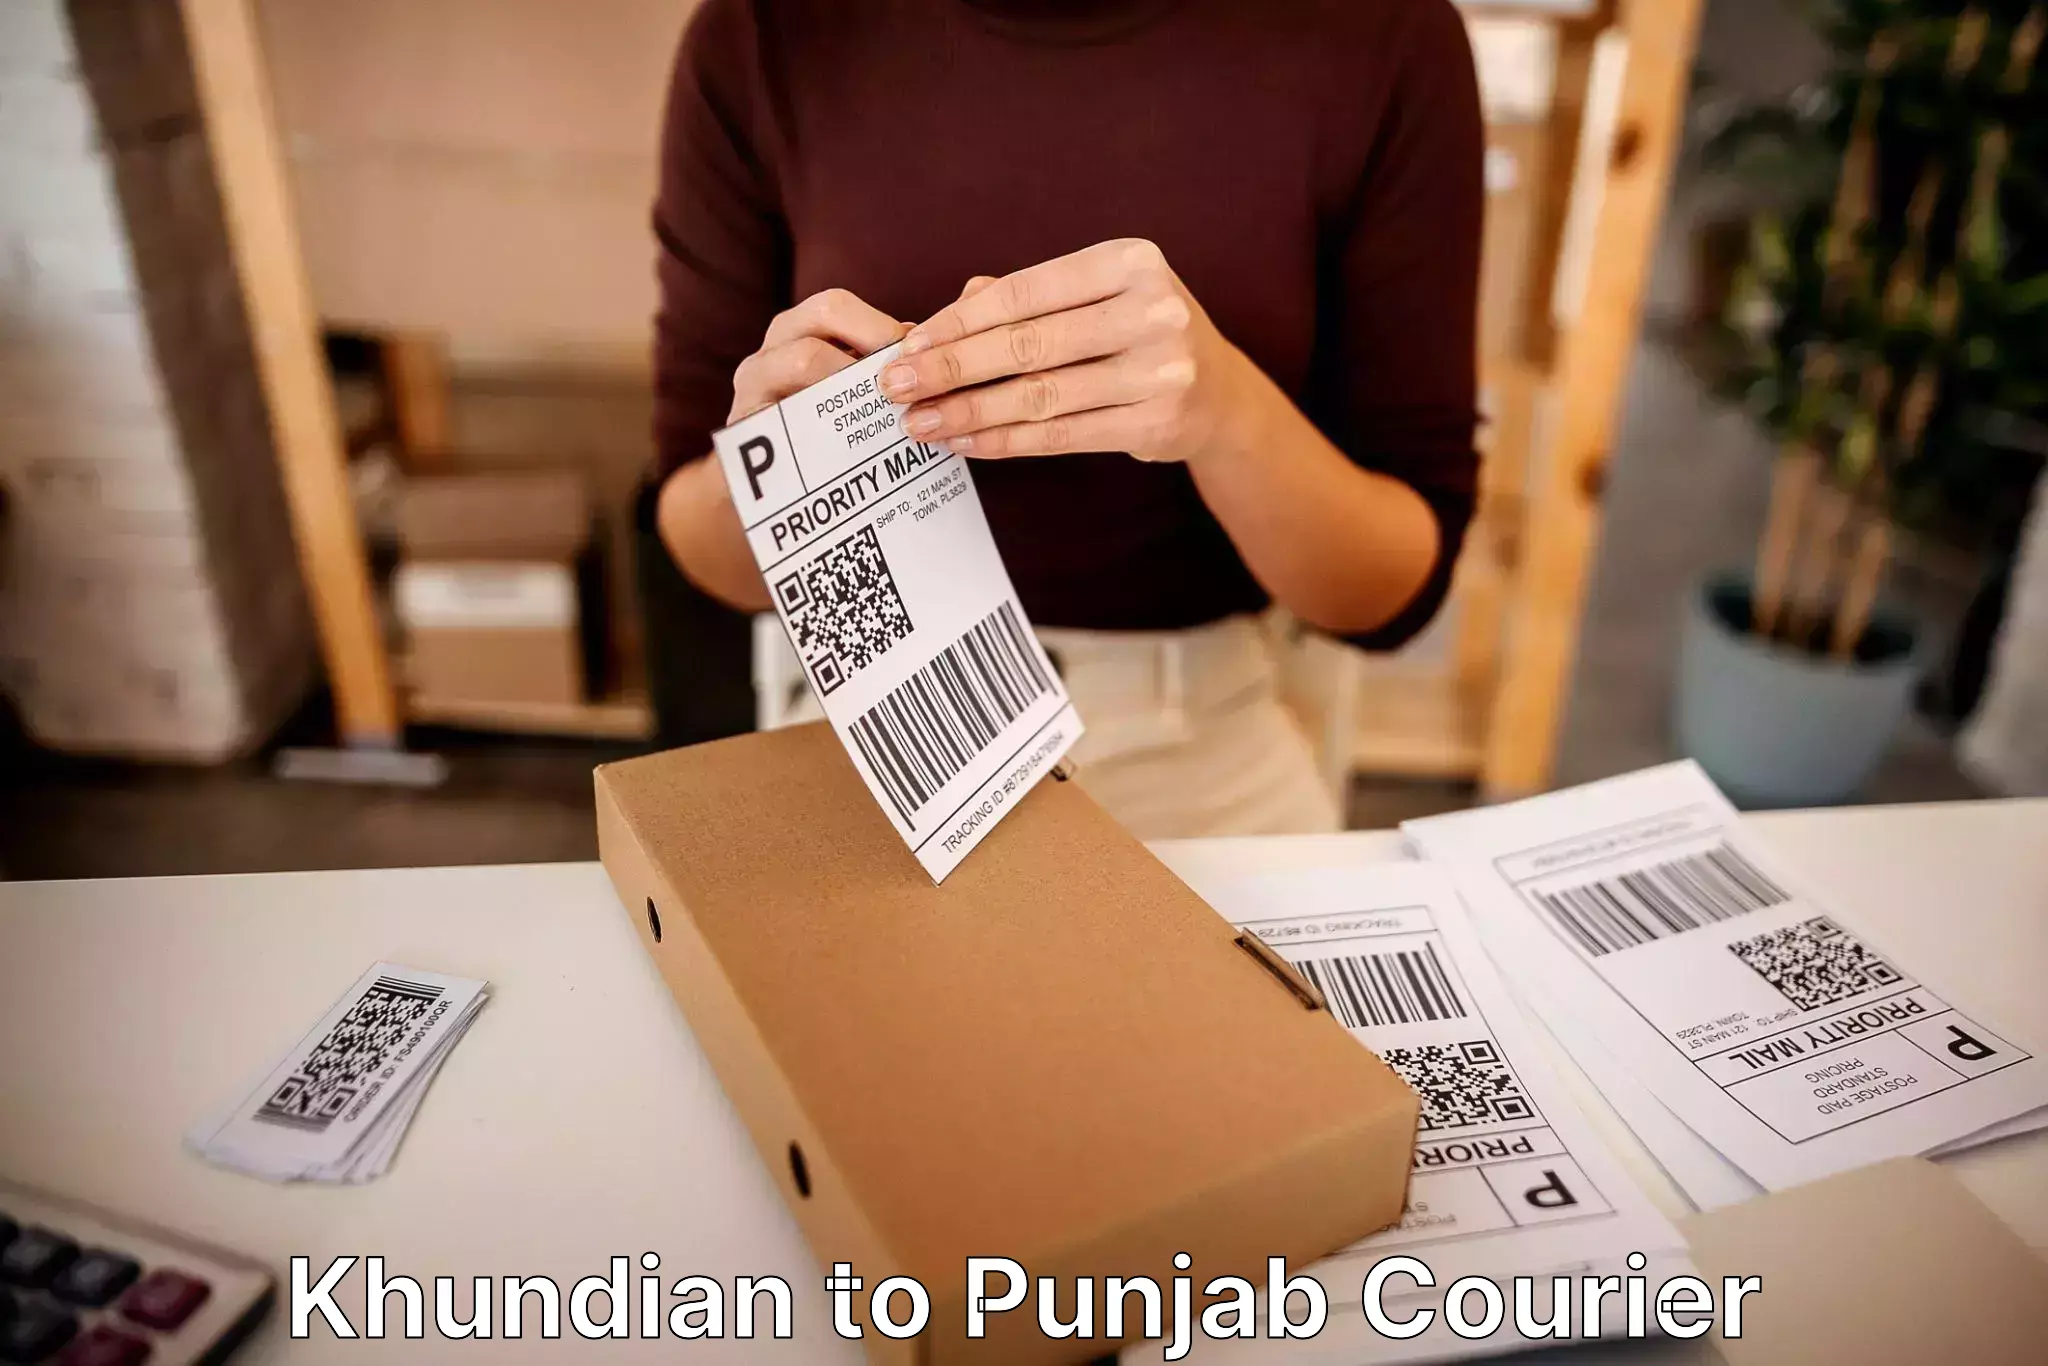 Household moving strategies Khundian to Punjab